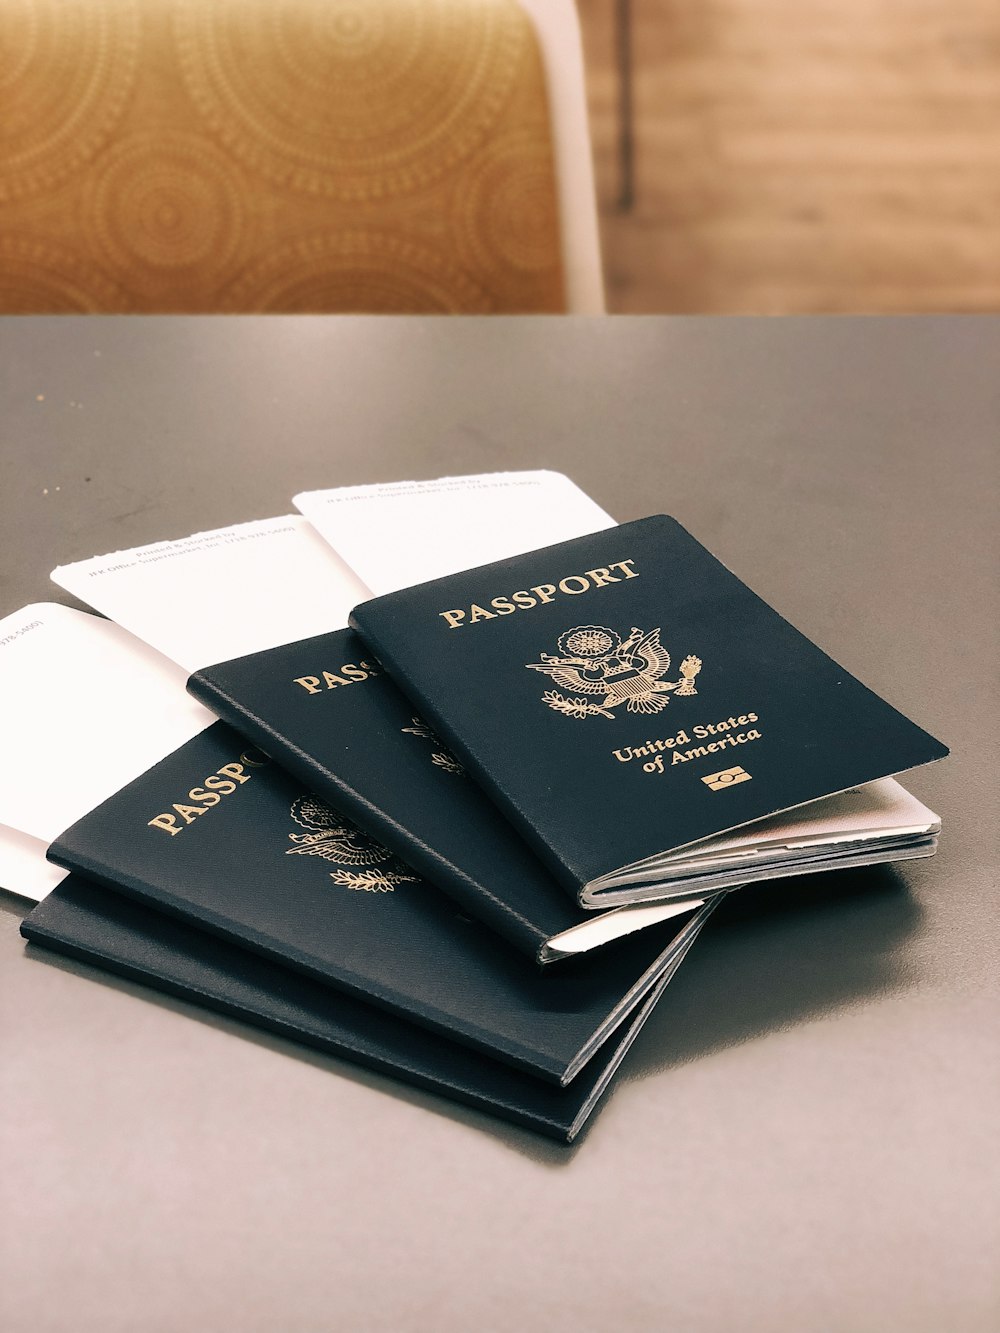 quatro passaportes verdes